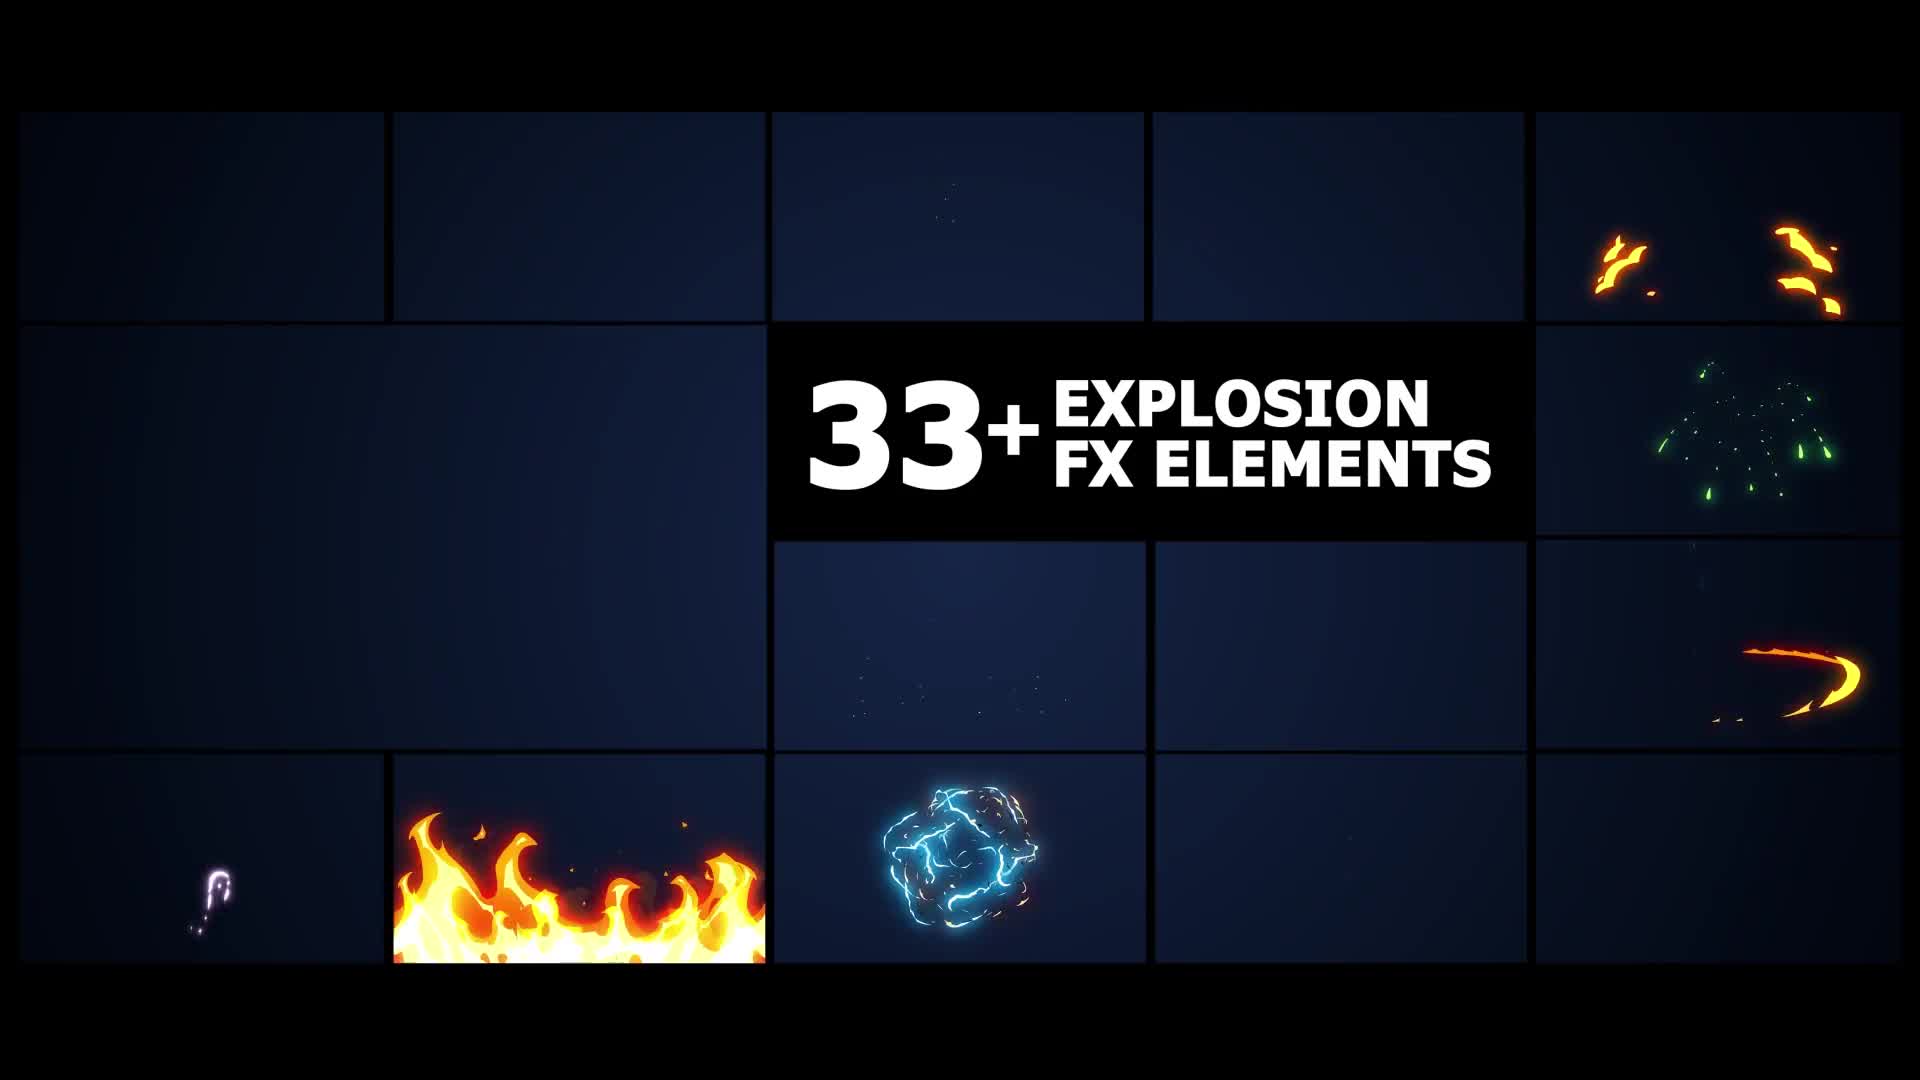 Flash FX Elements Pack | Premiere Pro MOGRT Videohive 38443170 Premiere Pro Image 1